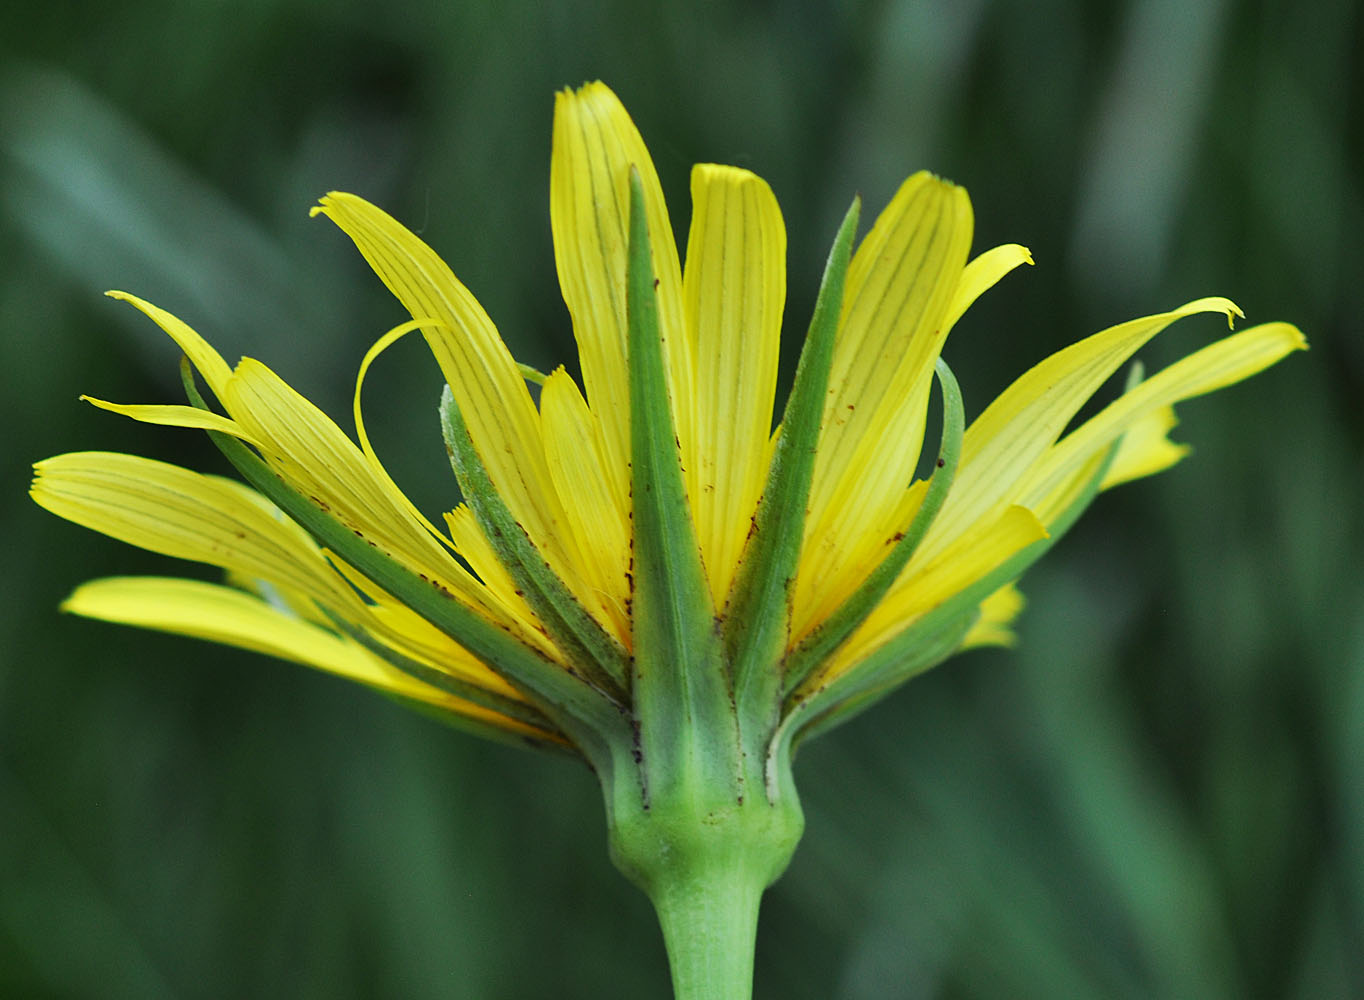 Flora of Eastern Washington Image: Tragopogon floccosus